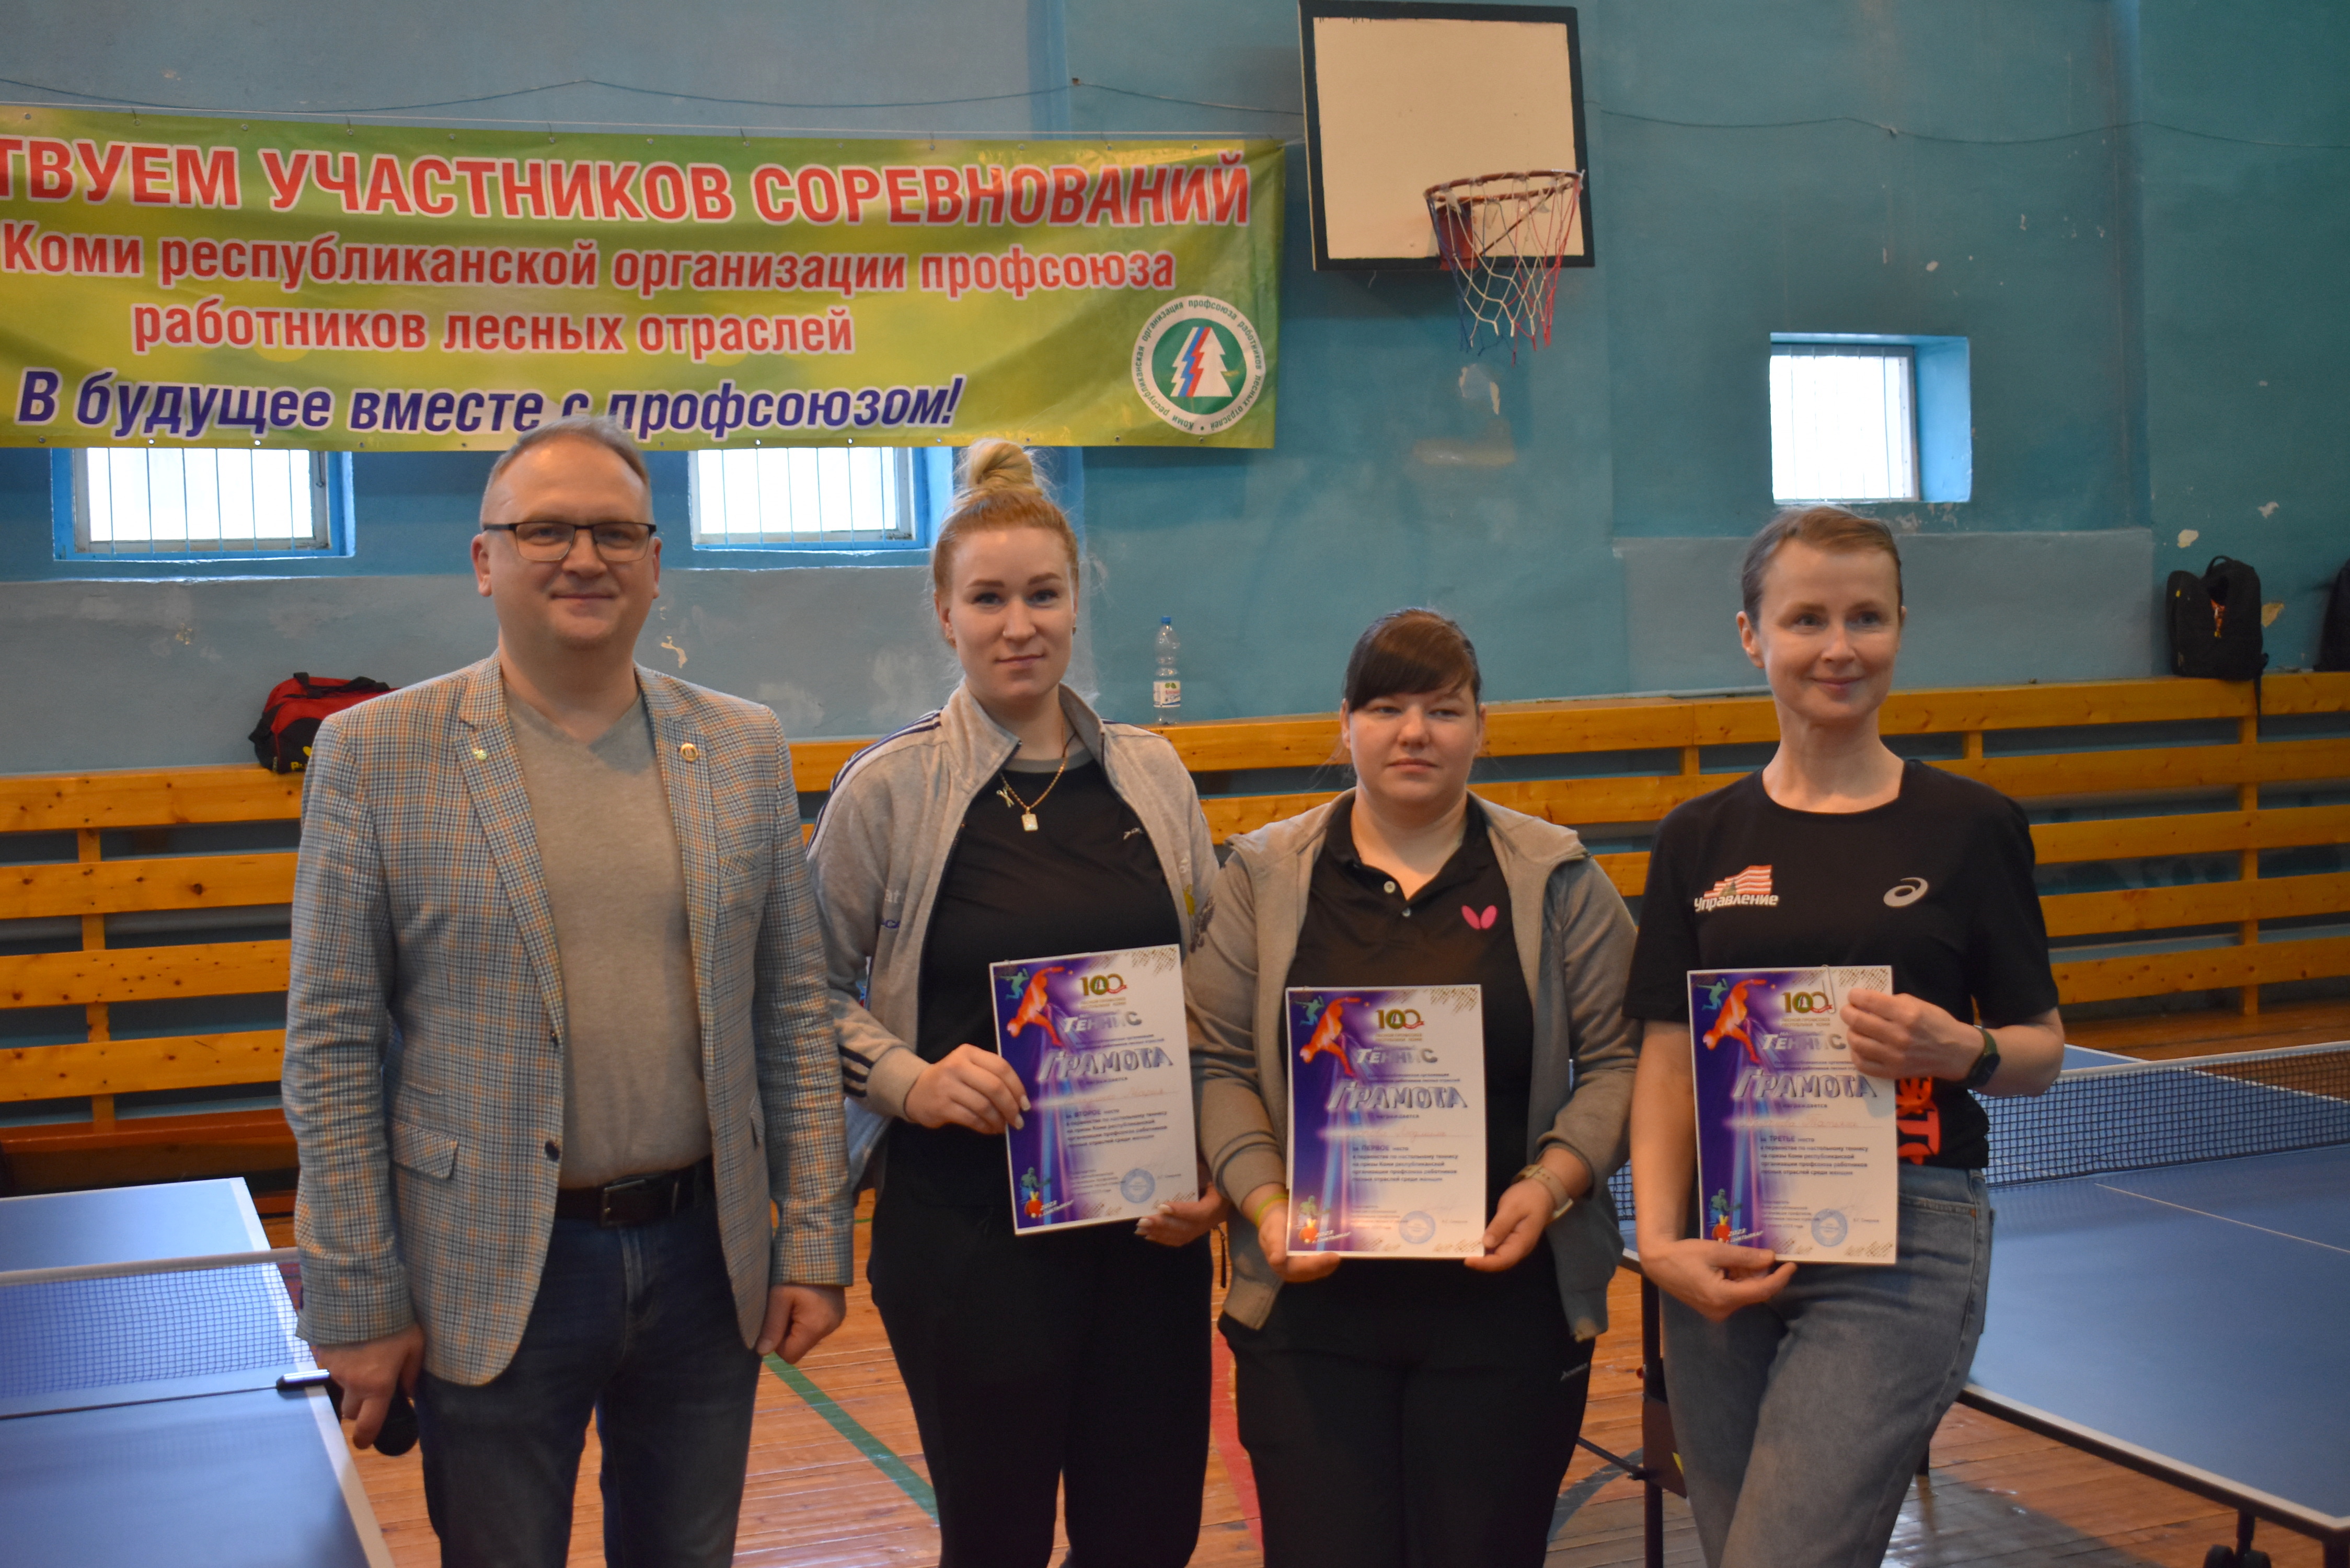 Участниками чемпионата по настольному теннису в Сыктывкаре стали 12 команд из Коми